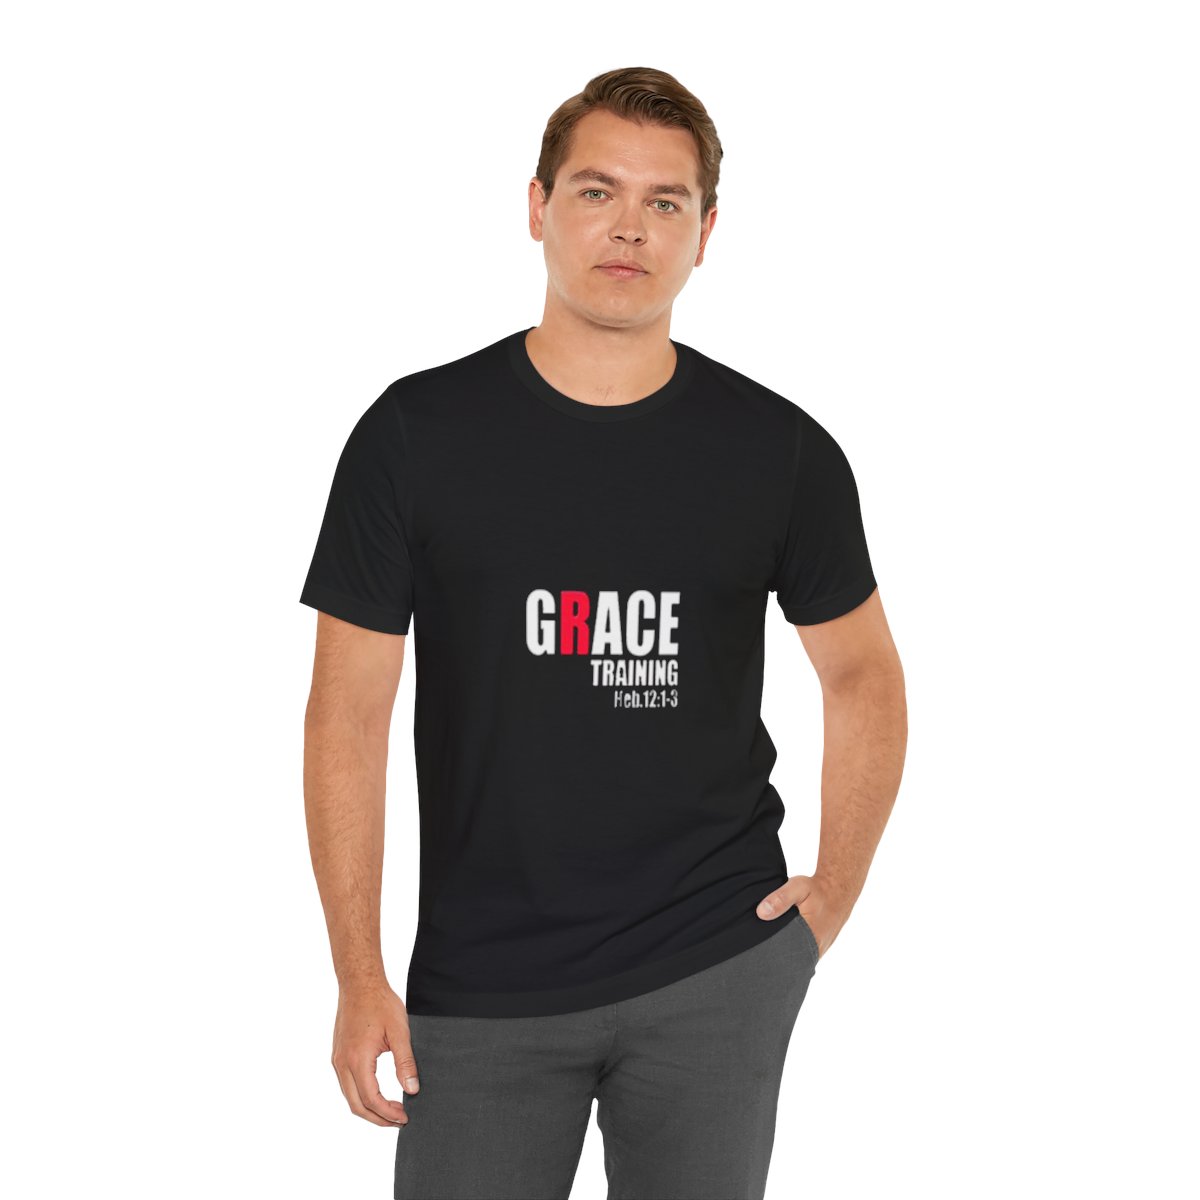 Grace Training T-Shirt product thumbnail image